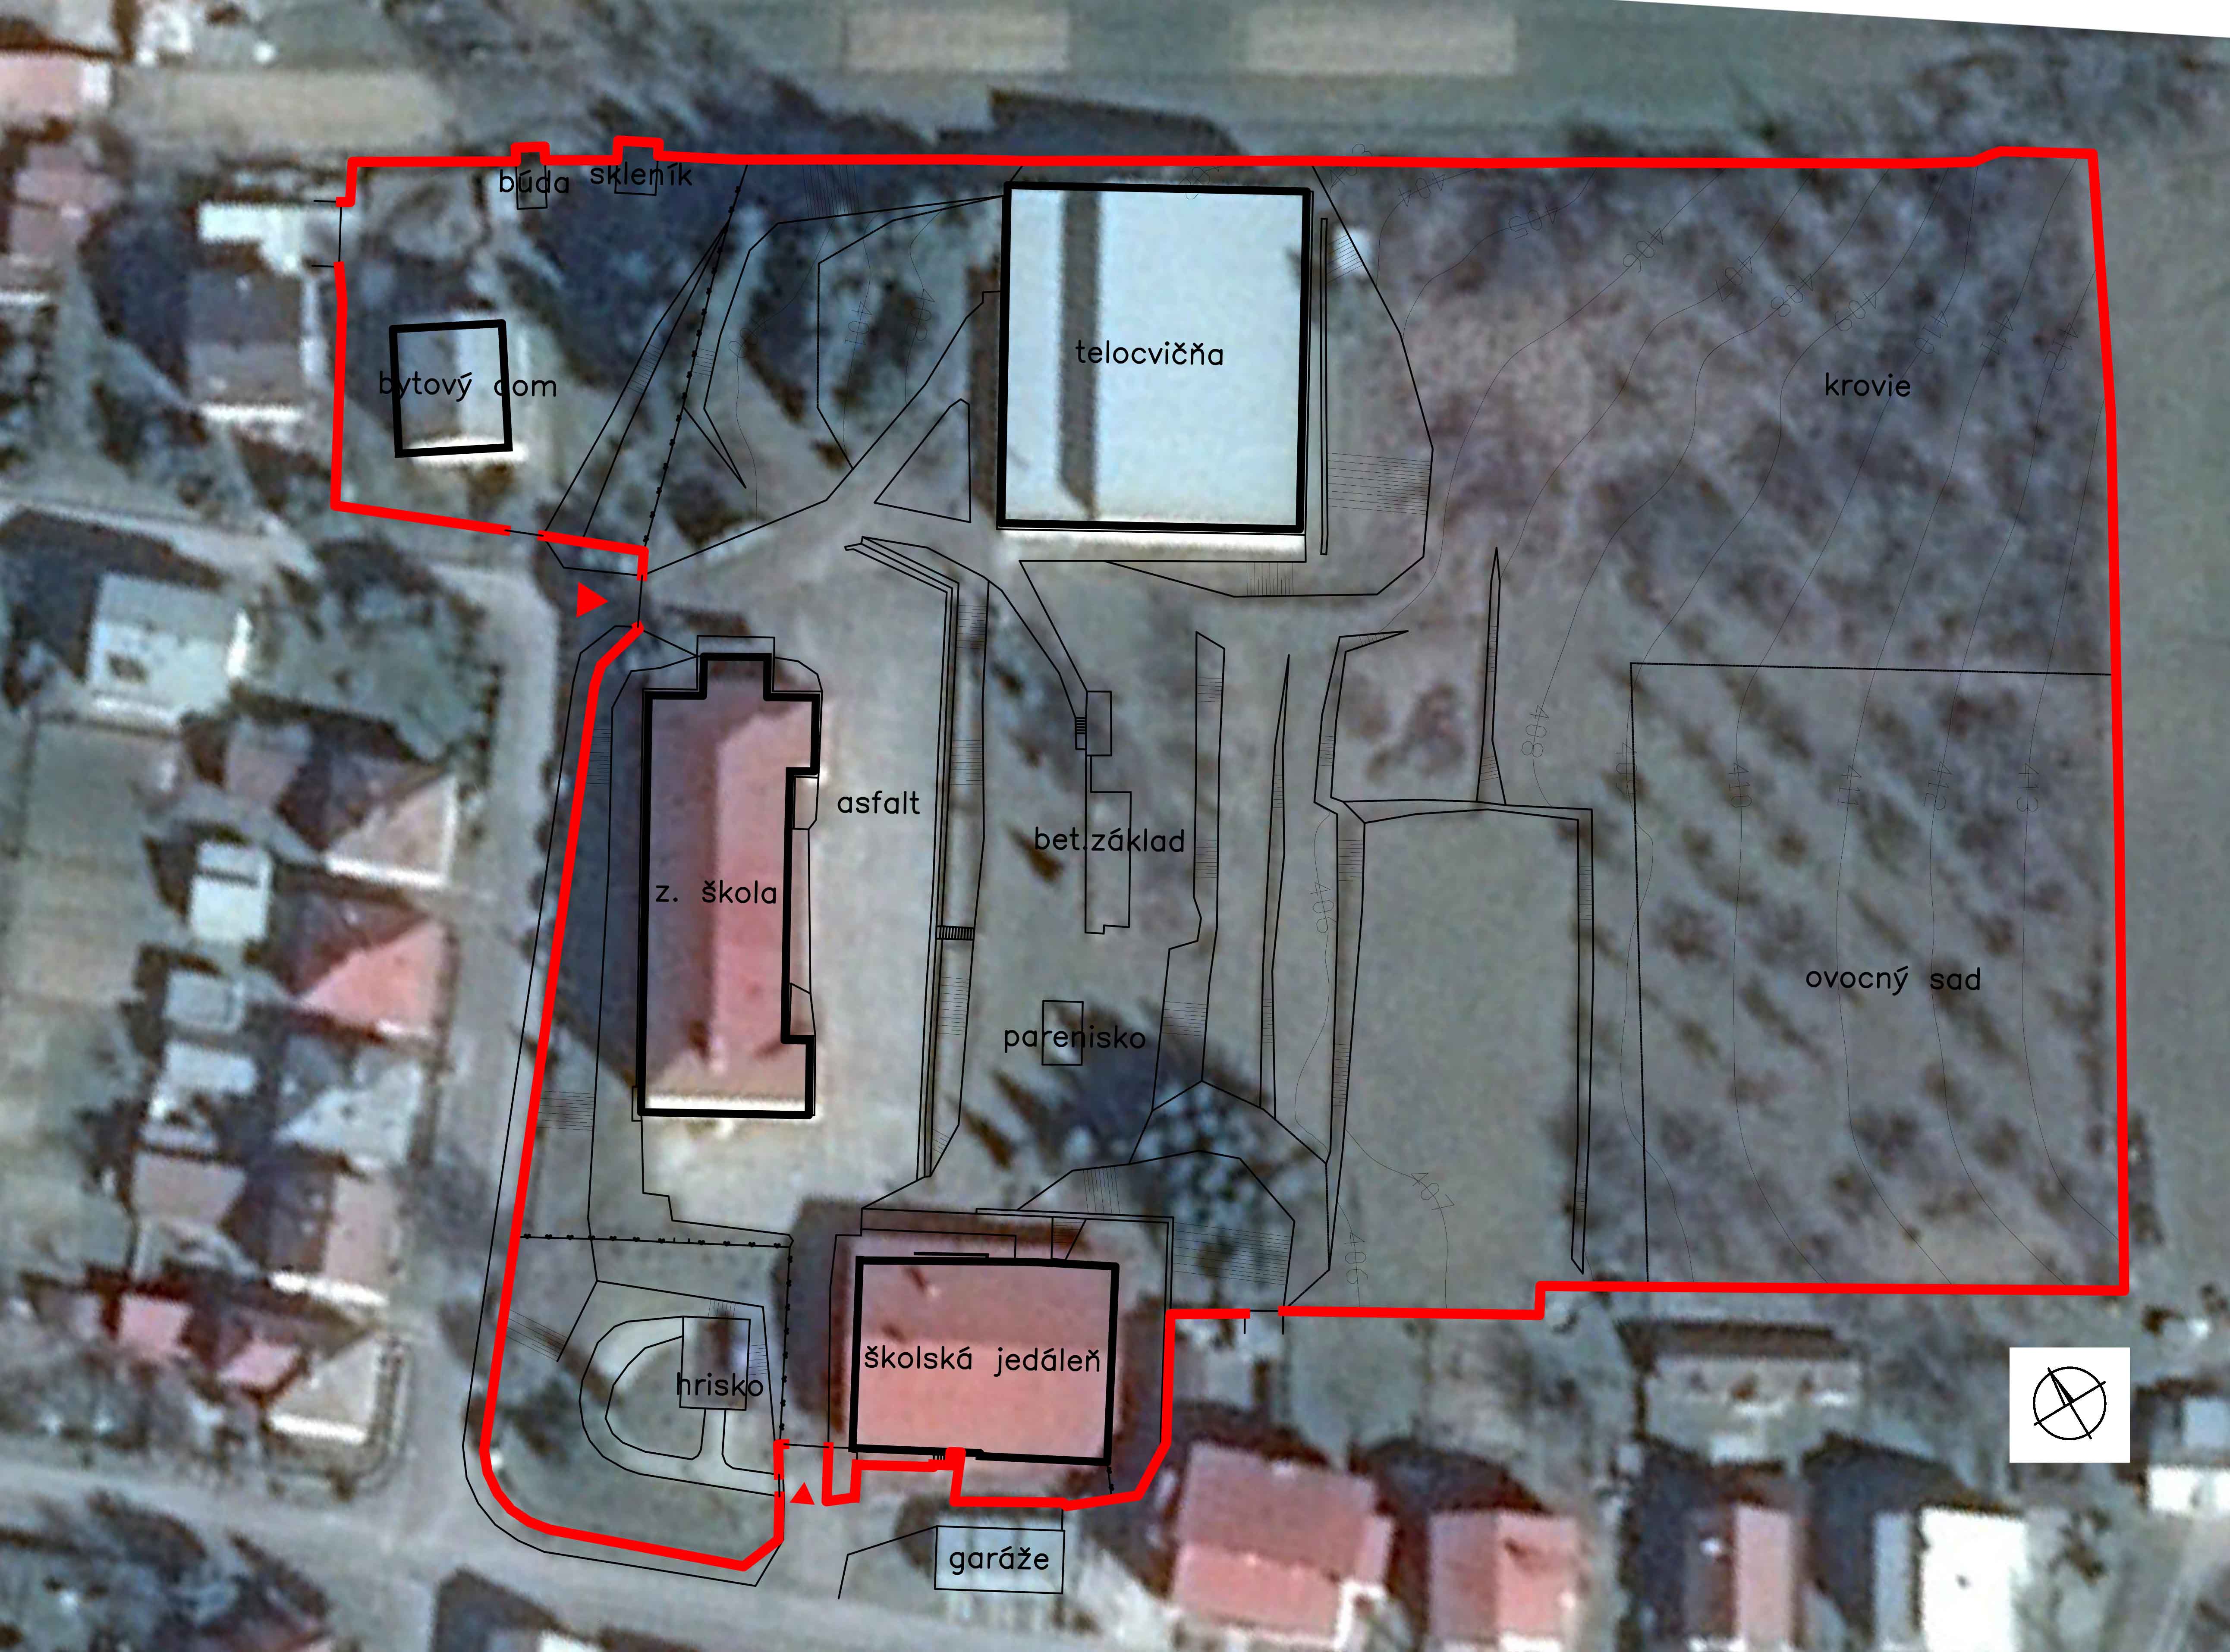 Situácia so zakreslením areélu MŠ. Novú materskú školu je možné umiestniť voľne na pozemku vo väzbe na jestvujúcu budovu školskej jedálne.